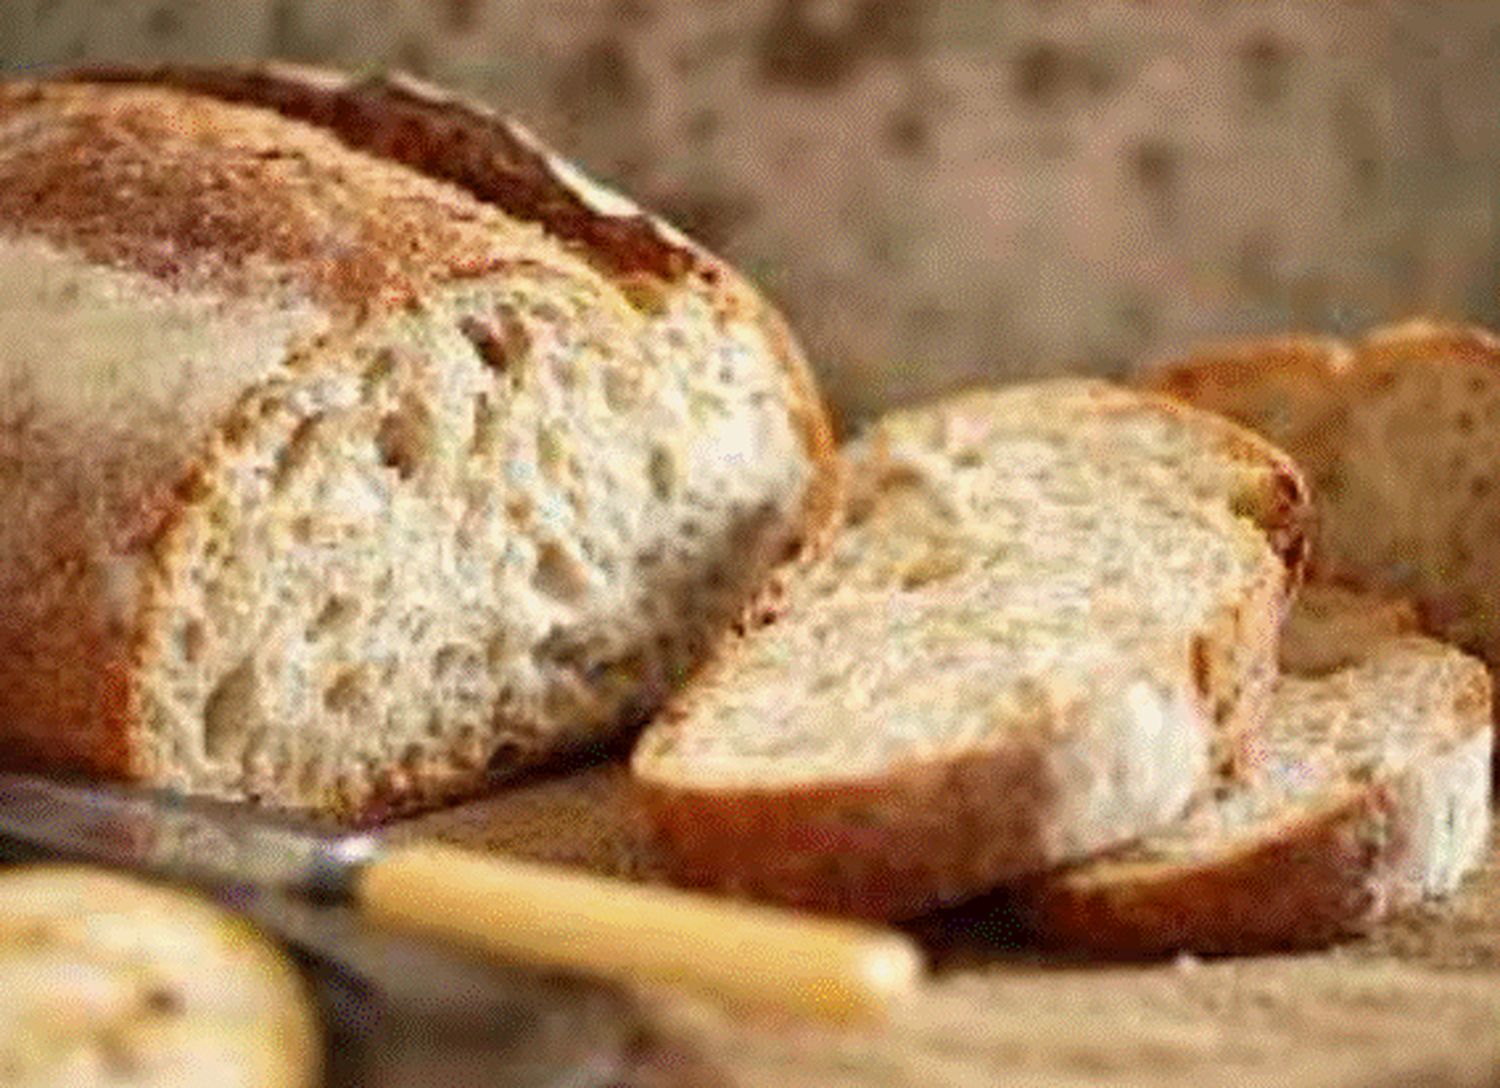 Nu aruncați niciodată pâinea uscată. Iată ce lucruri extraordinare puteți prepara și veți face și economie în portofel